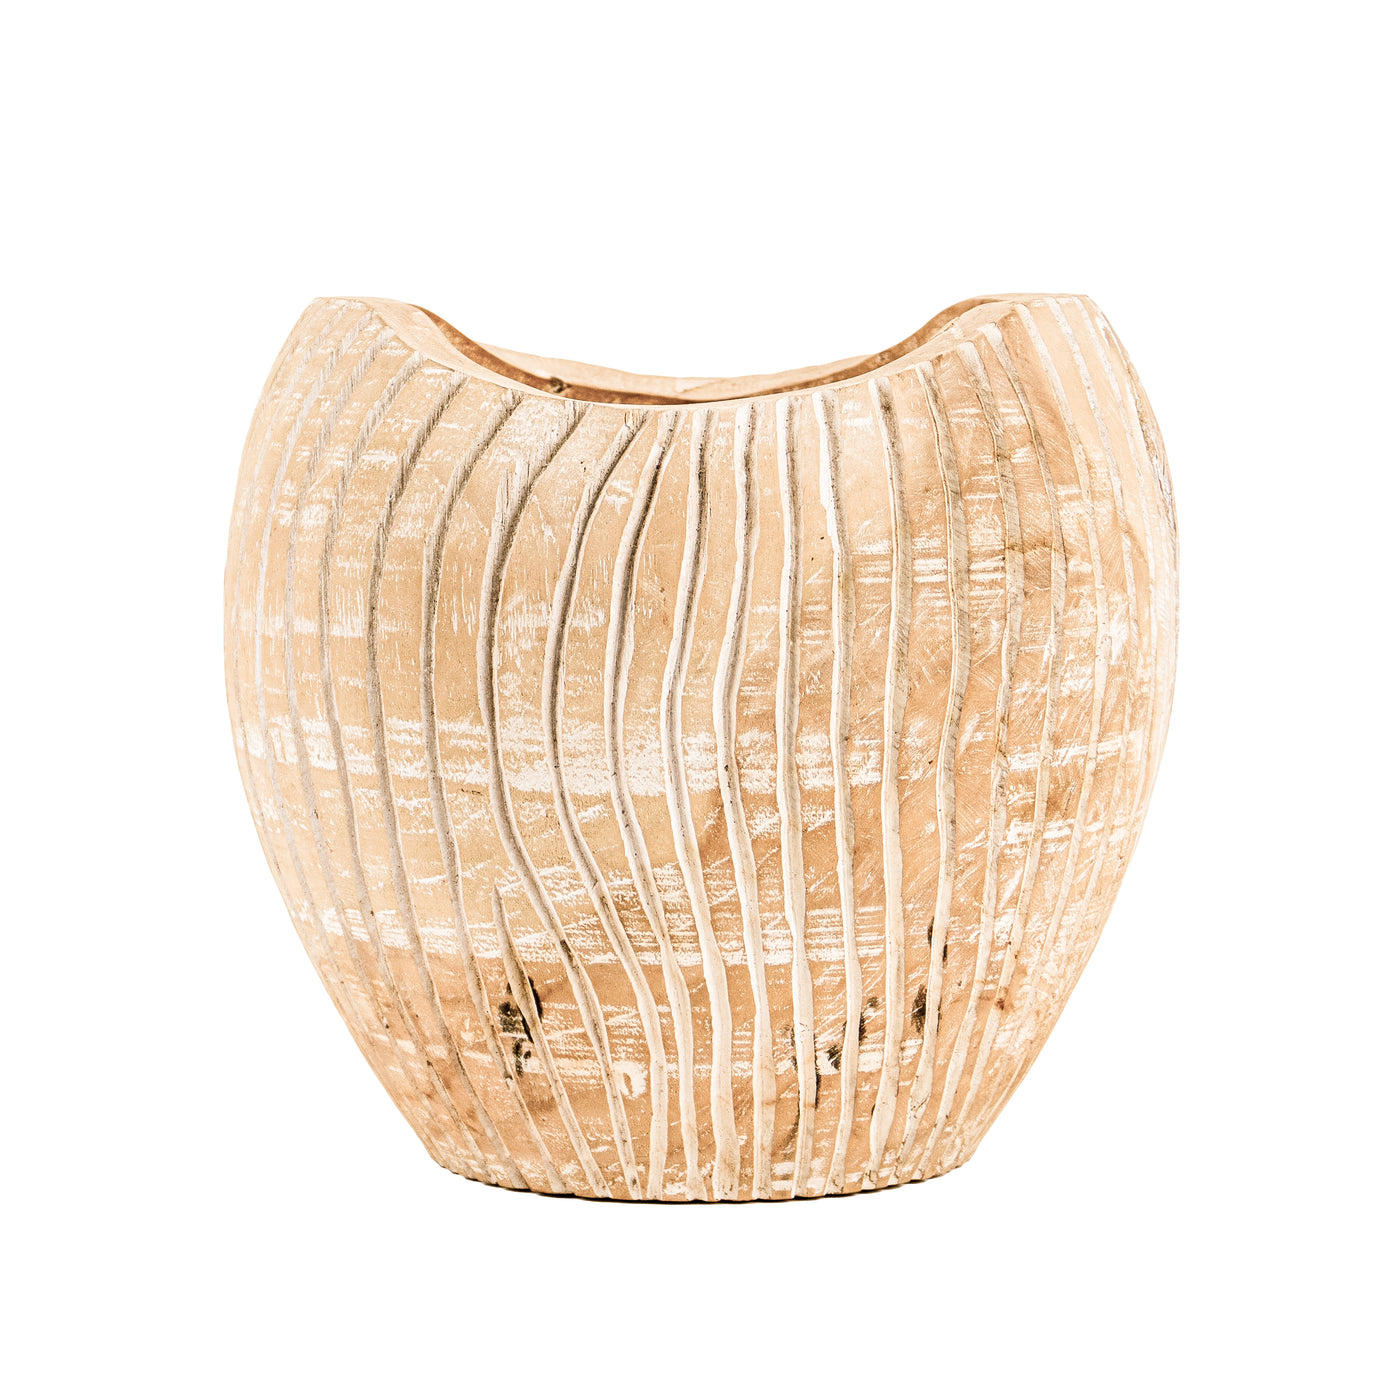 Wooden Vase of Timor